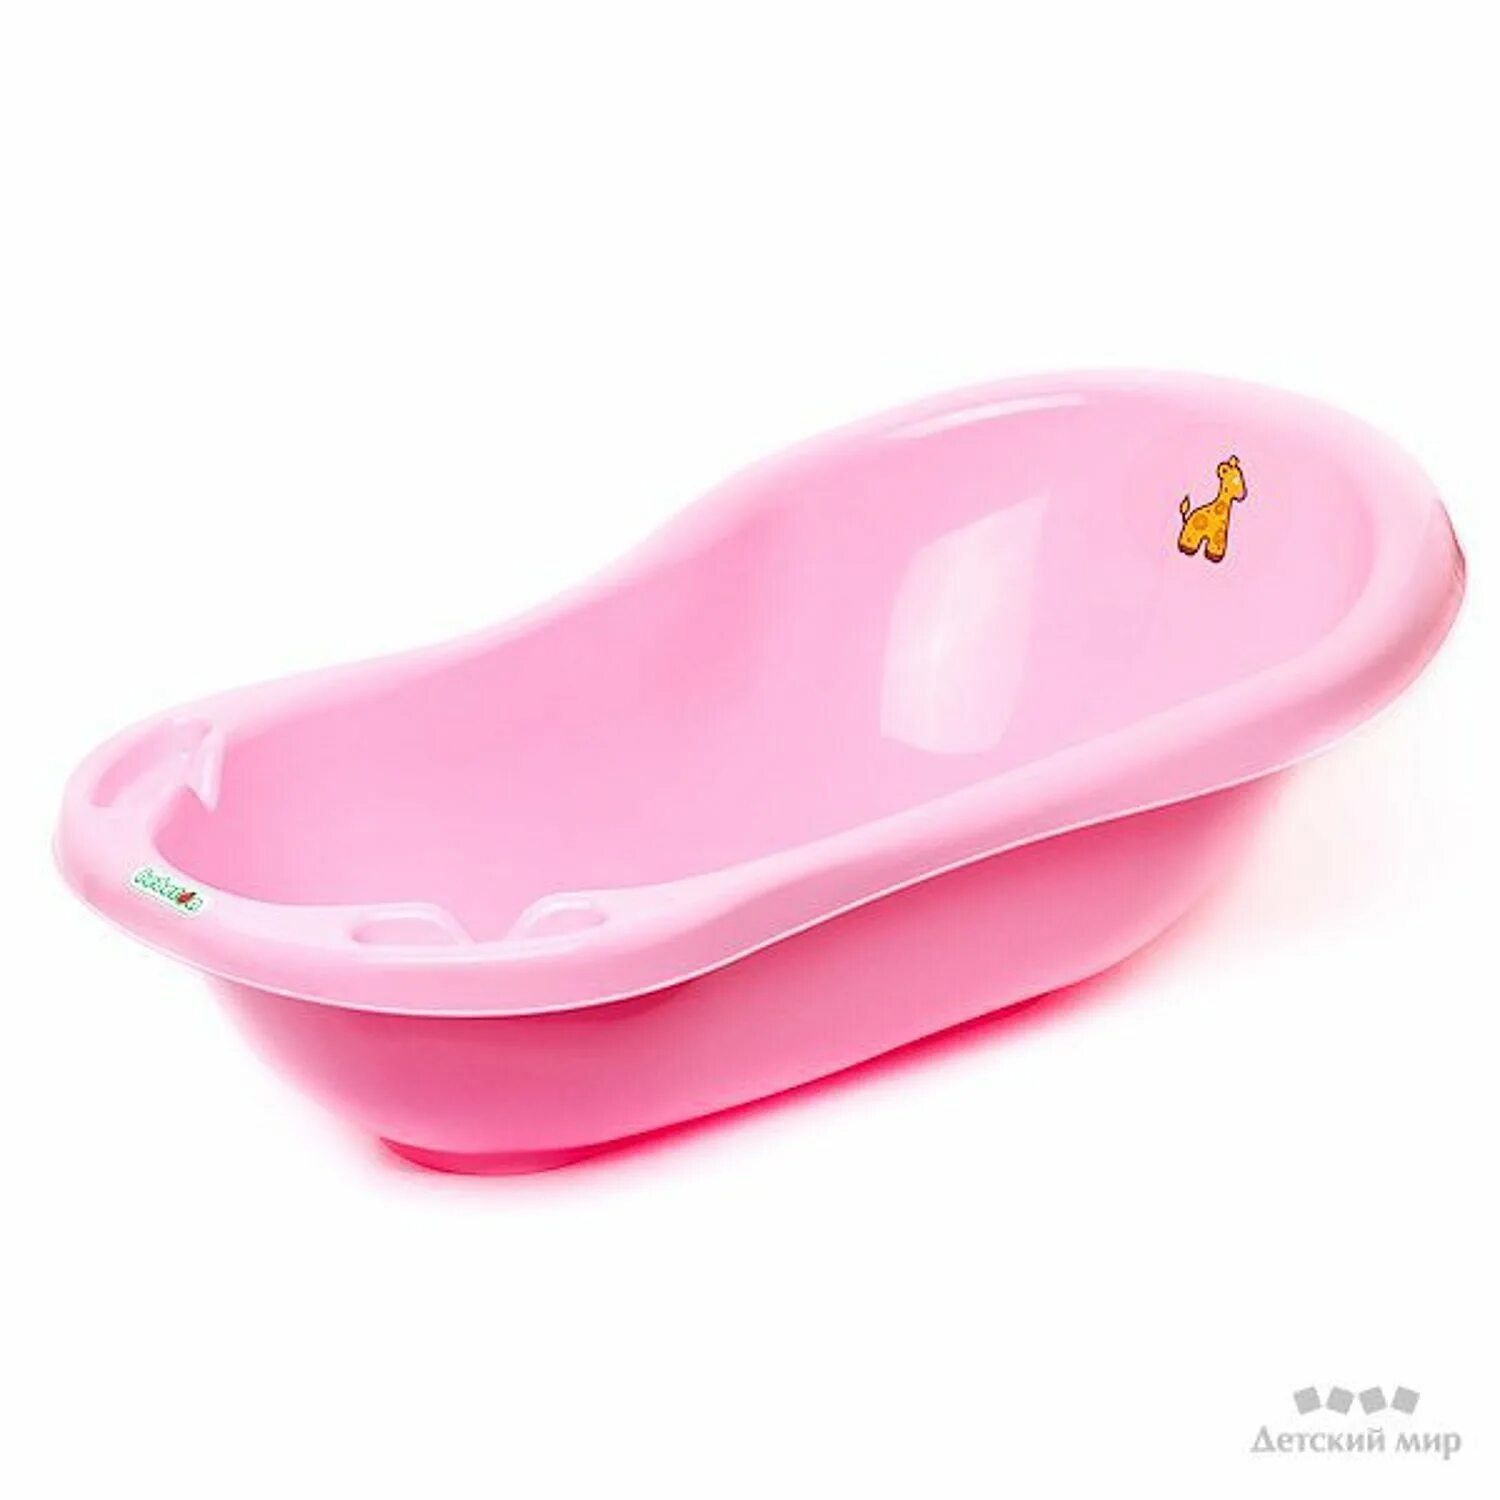 Купить ванночку спб. Ванночка бебетон. Детская ванна Babyton 100. Ванночка Babyton 46л. М3222 ванна детская "Карапуз"(розовый).